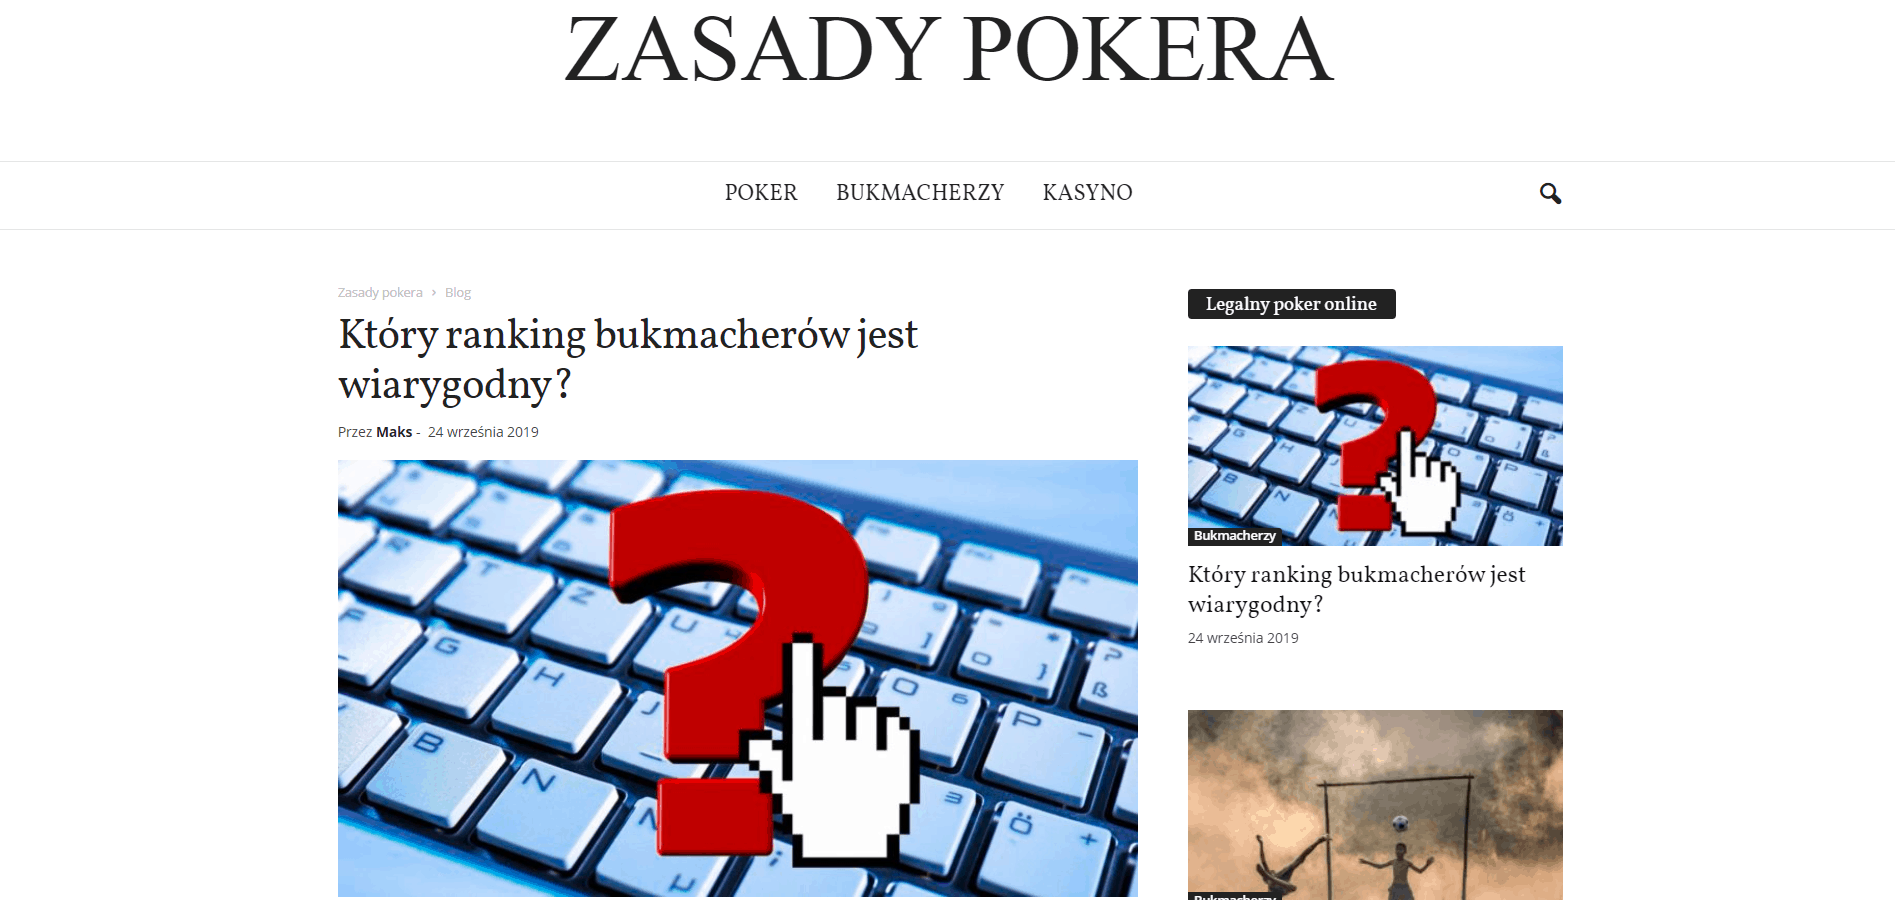 ZASADY-POKERA.PL